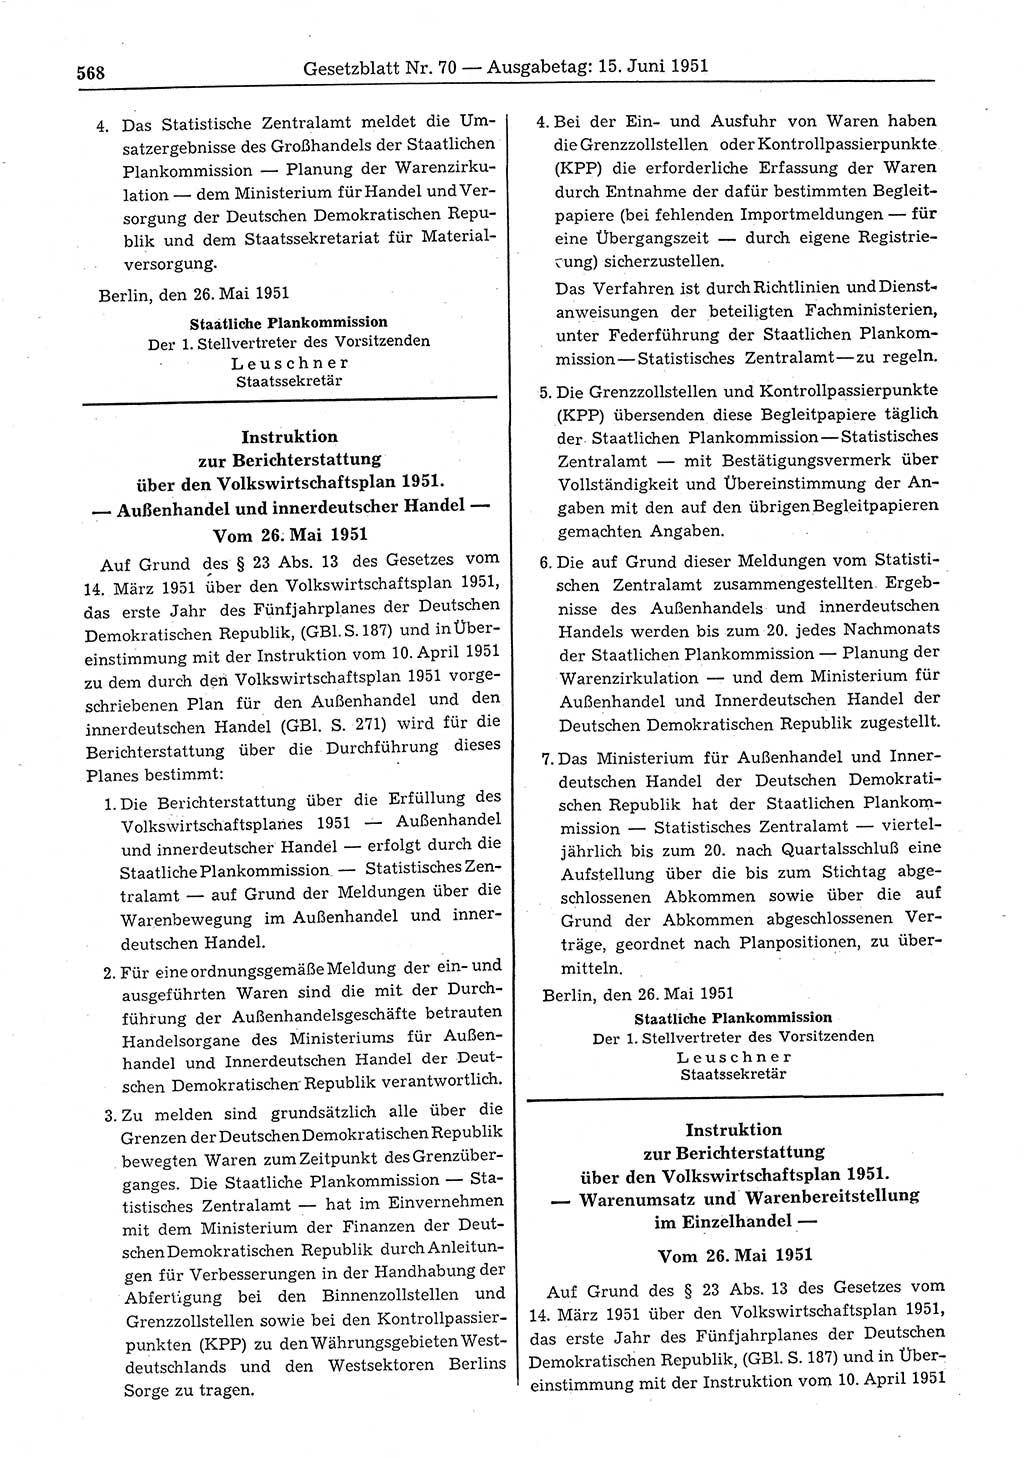 Gesetzblatt (GBl.) der Deutschen Demokratischen Republik (DDR) 1951, Seite 568 (GBl. DDR 1951, S. 568)